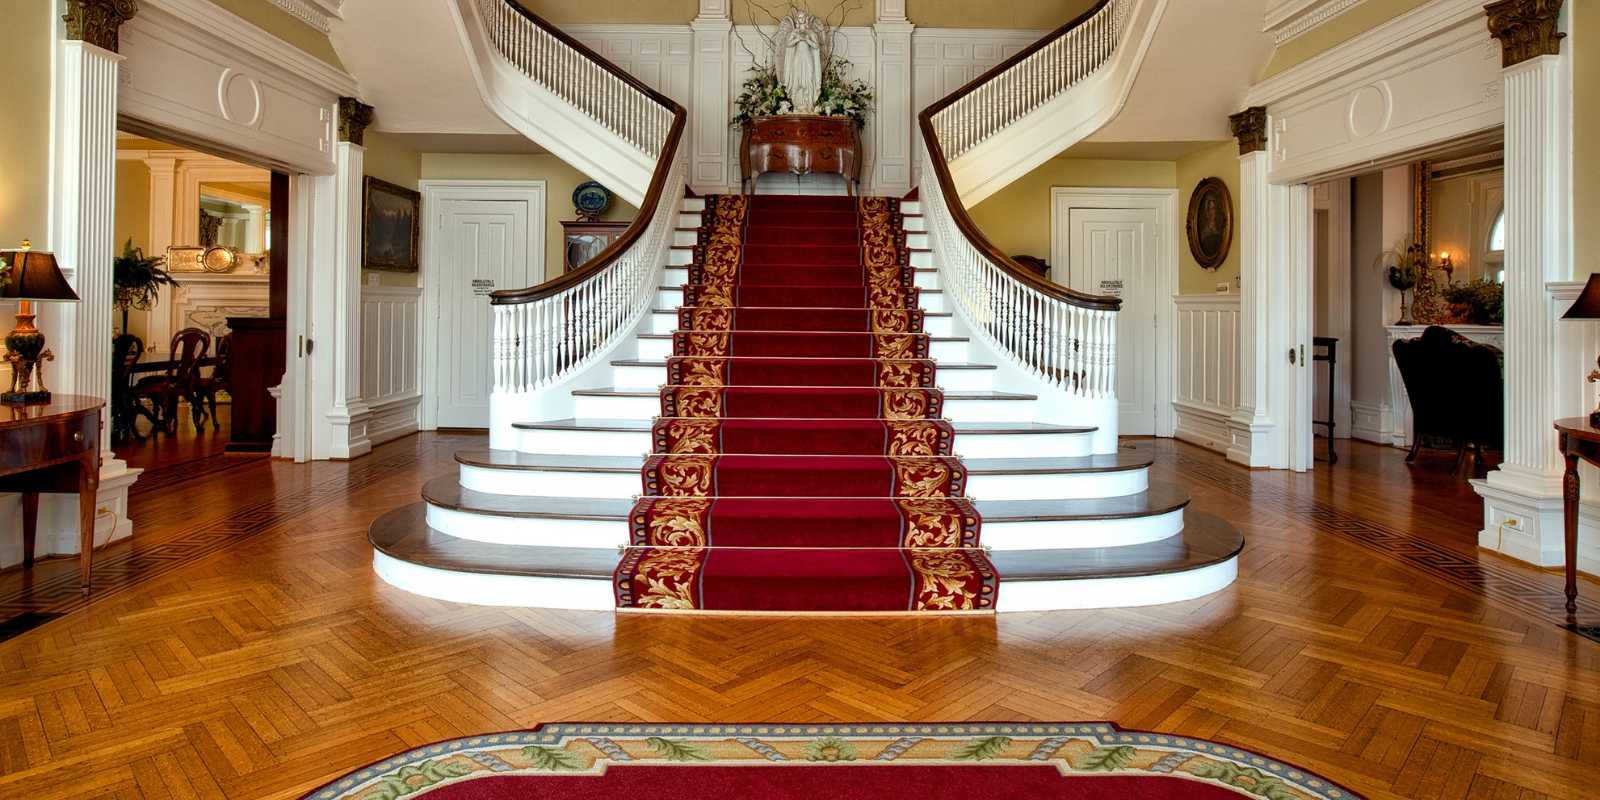 Billede af en stor flot entre, med en stort trappe og et persisk tæppe i midten af trappen